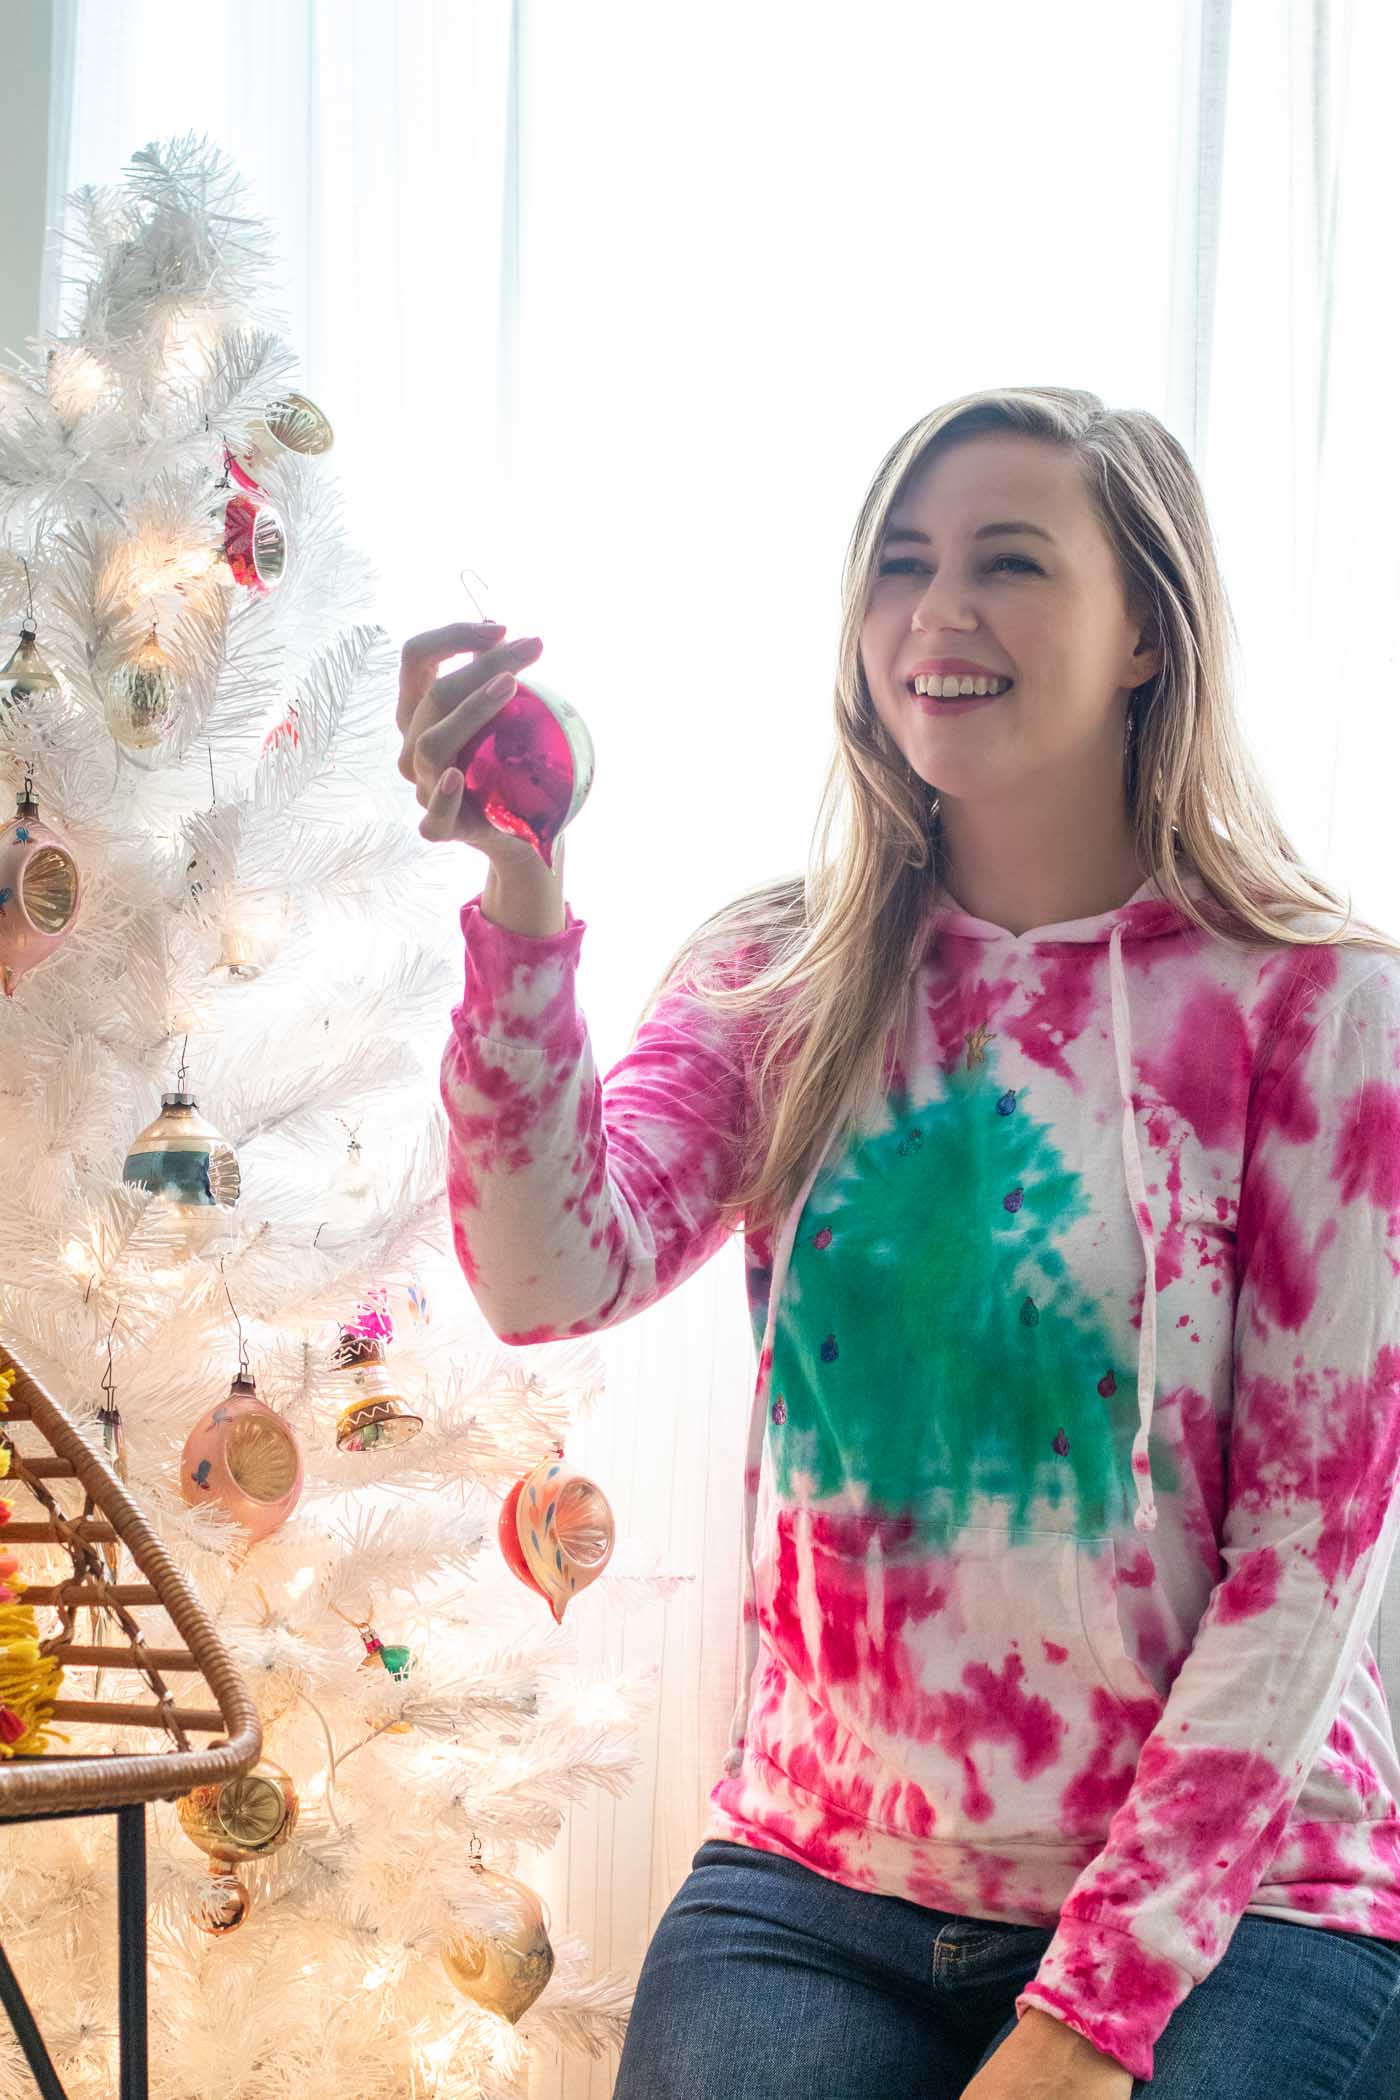 Tie Dye Christmas Tree Sweater // 2-Minute Tie Dye Tutorial // How to tie dye a Christmas sweater with a tree pattern using new Tulip 2-Minute Tie Dye #ad #tiedye #christmas #christmastree #christmasfashion #fabric #fabricpaint